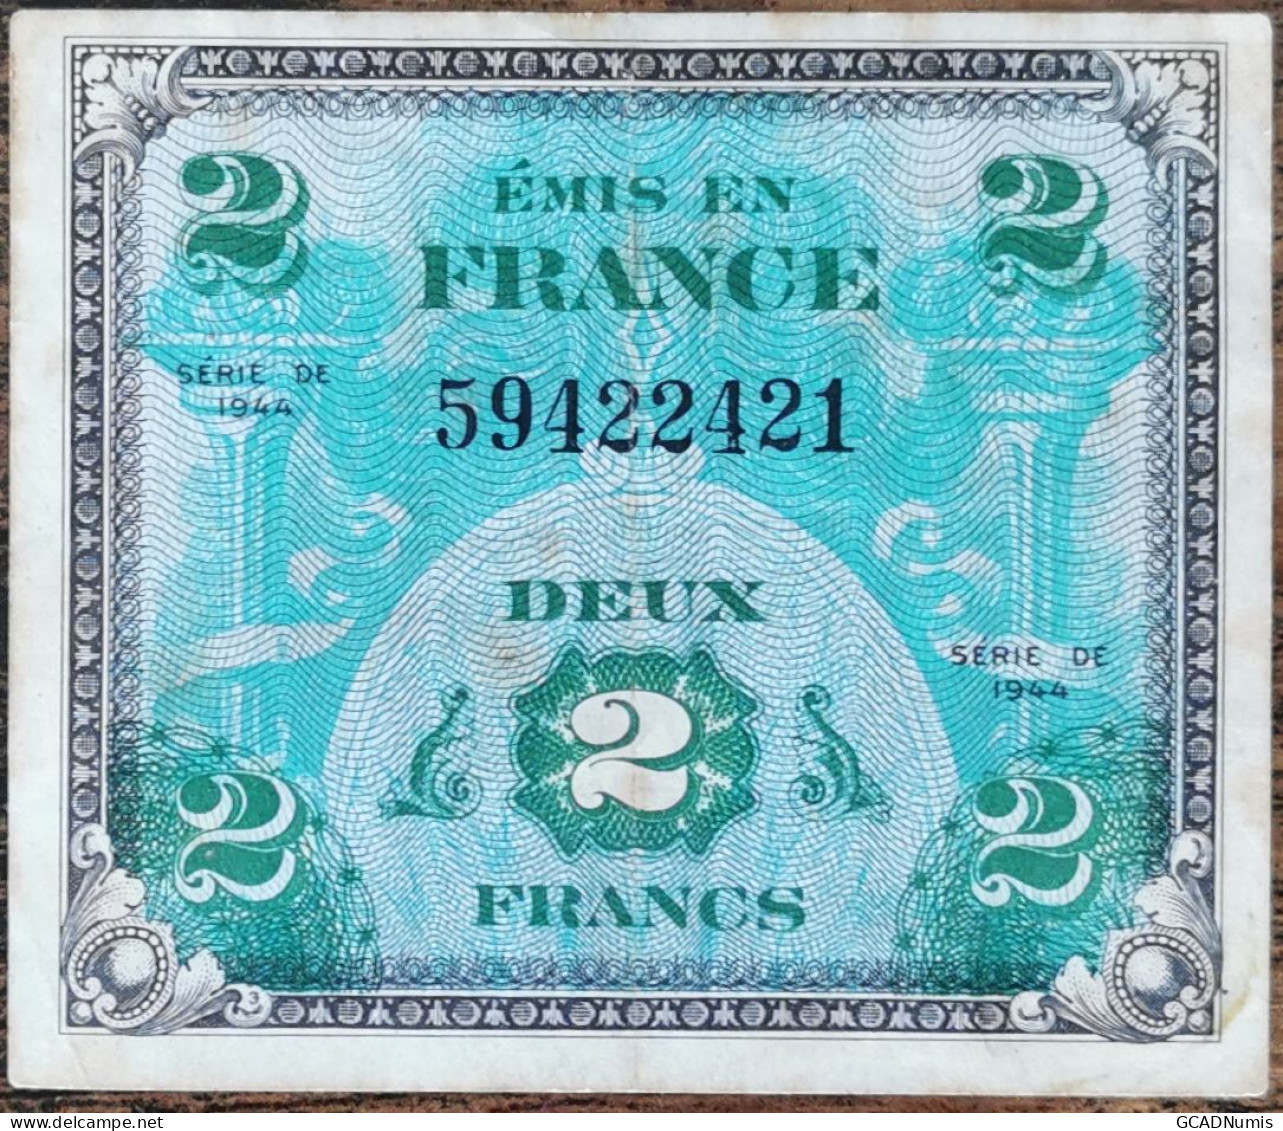 Billet 2 Francs 1944 FRANCE Préparer Par Les USA Pour La Libération 59422421 - 1944 Flagge/Frankreich